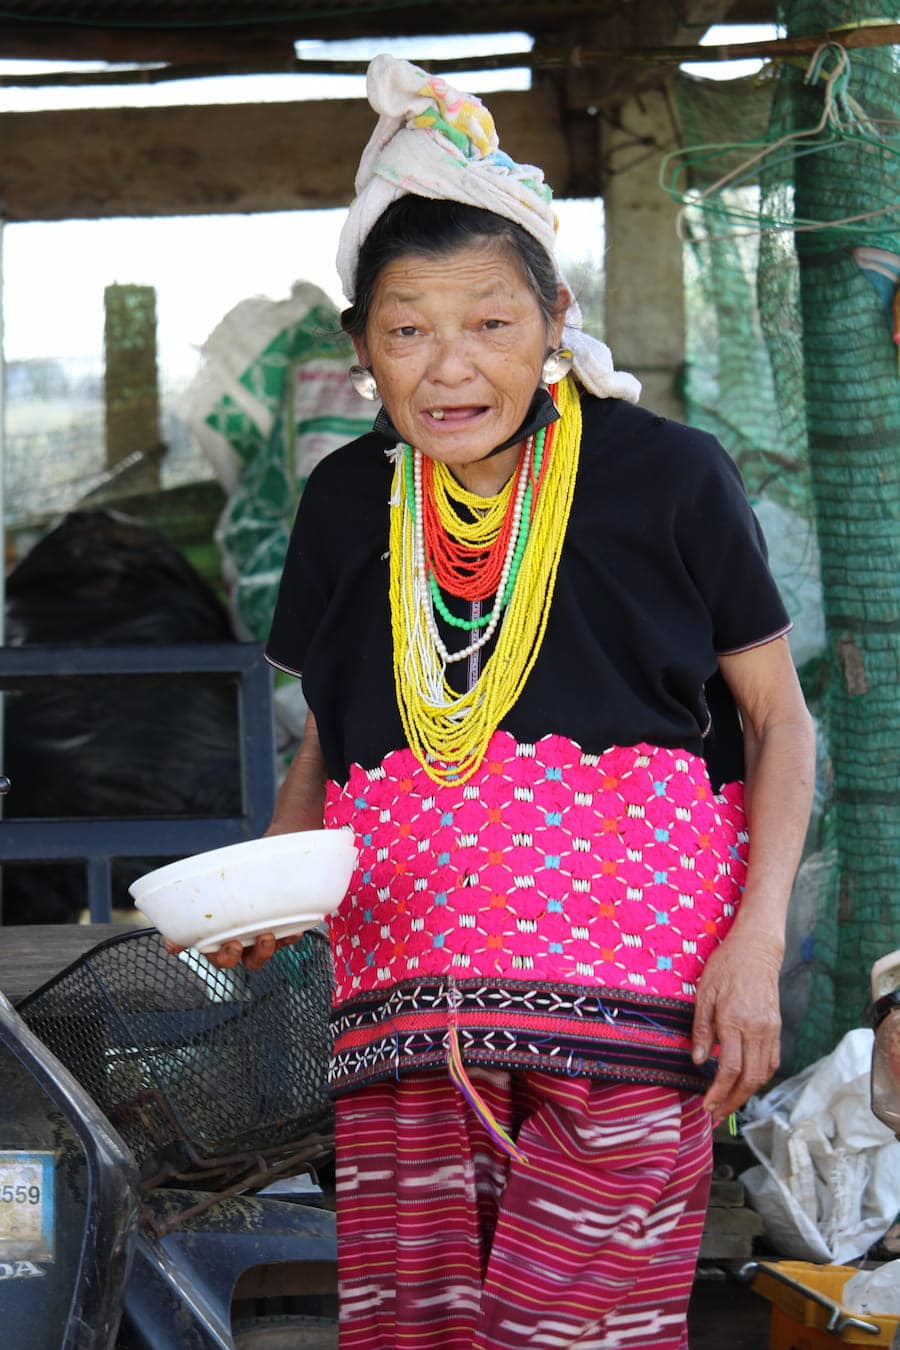 Femme Lua, peuple du nord de la Thaïlande dans notre article Road trip au nord de la Thaïlande à la rencontre des tribus des montagnes #thailande #nord #tribu #peuple #montagnes #roadtrip #asie #voyage